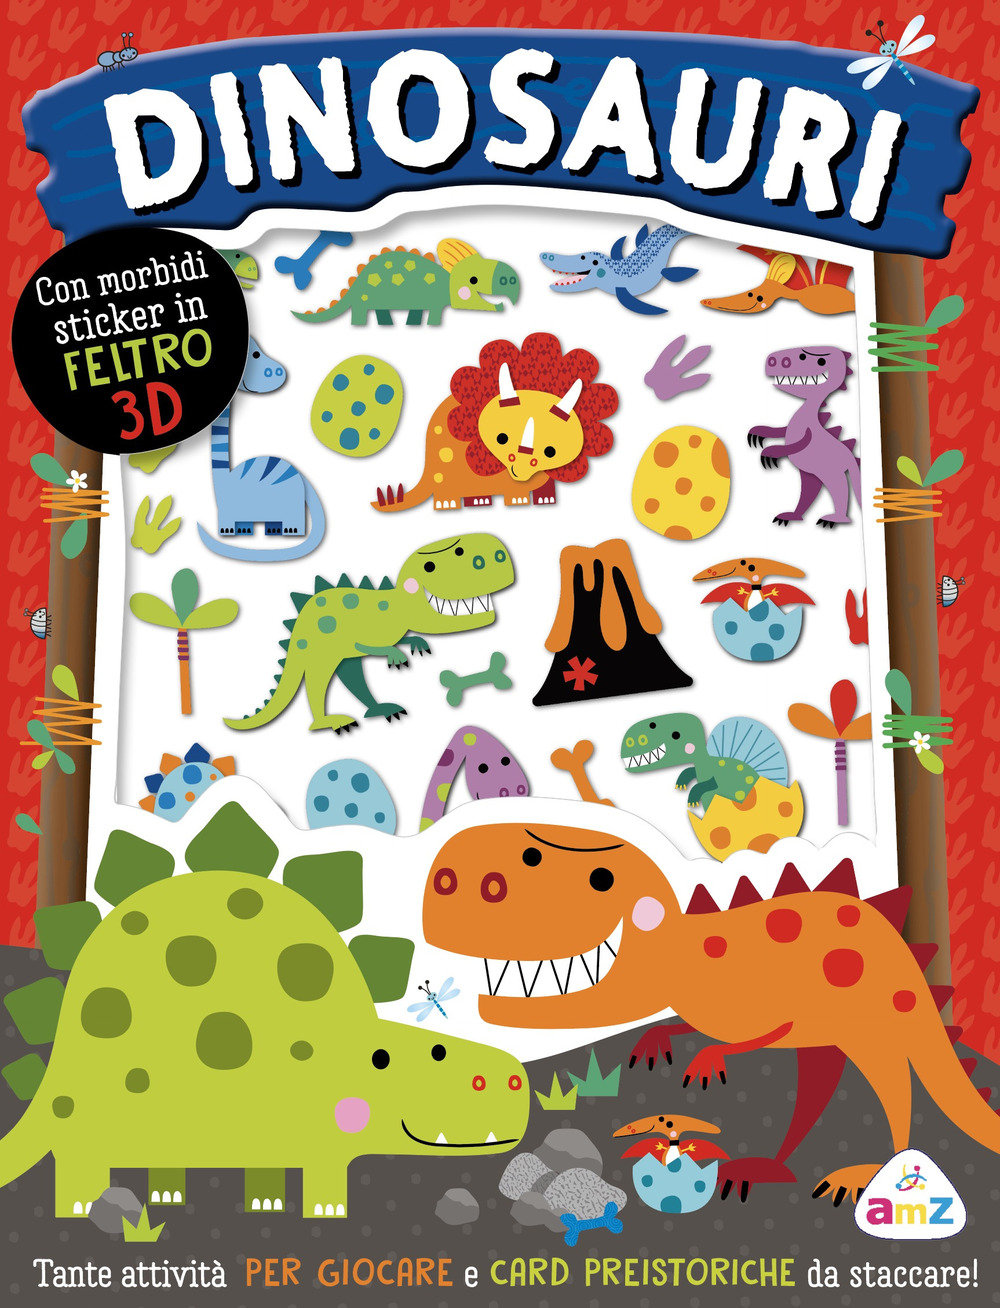 Dinosauri. Sticker tenerini. Ediz. a colori